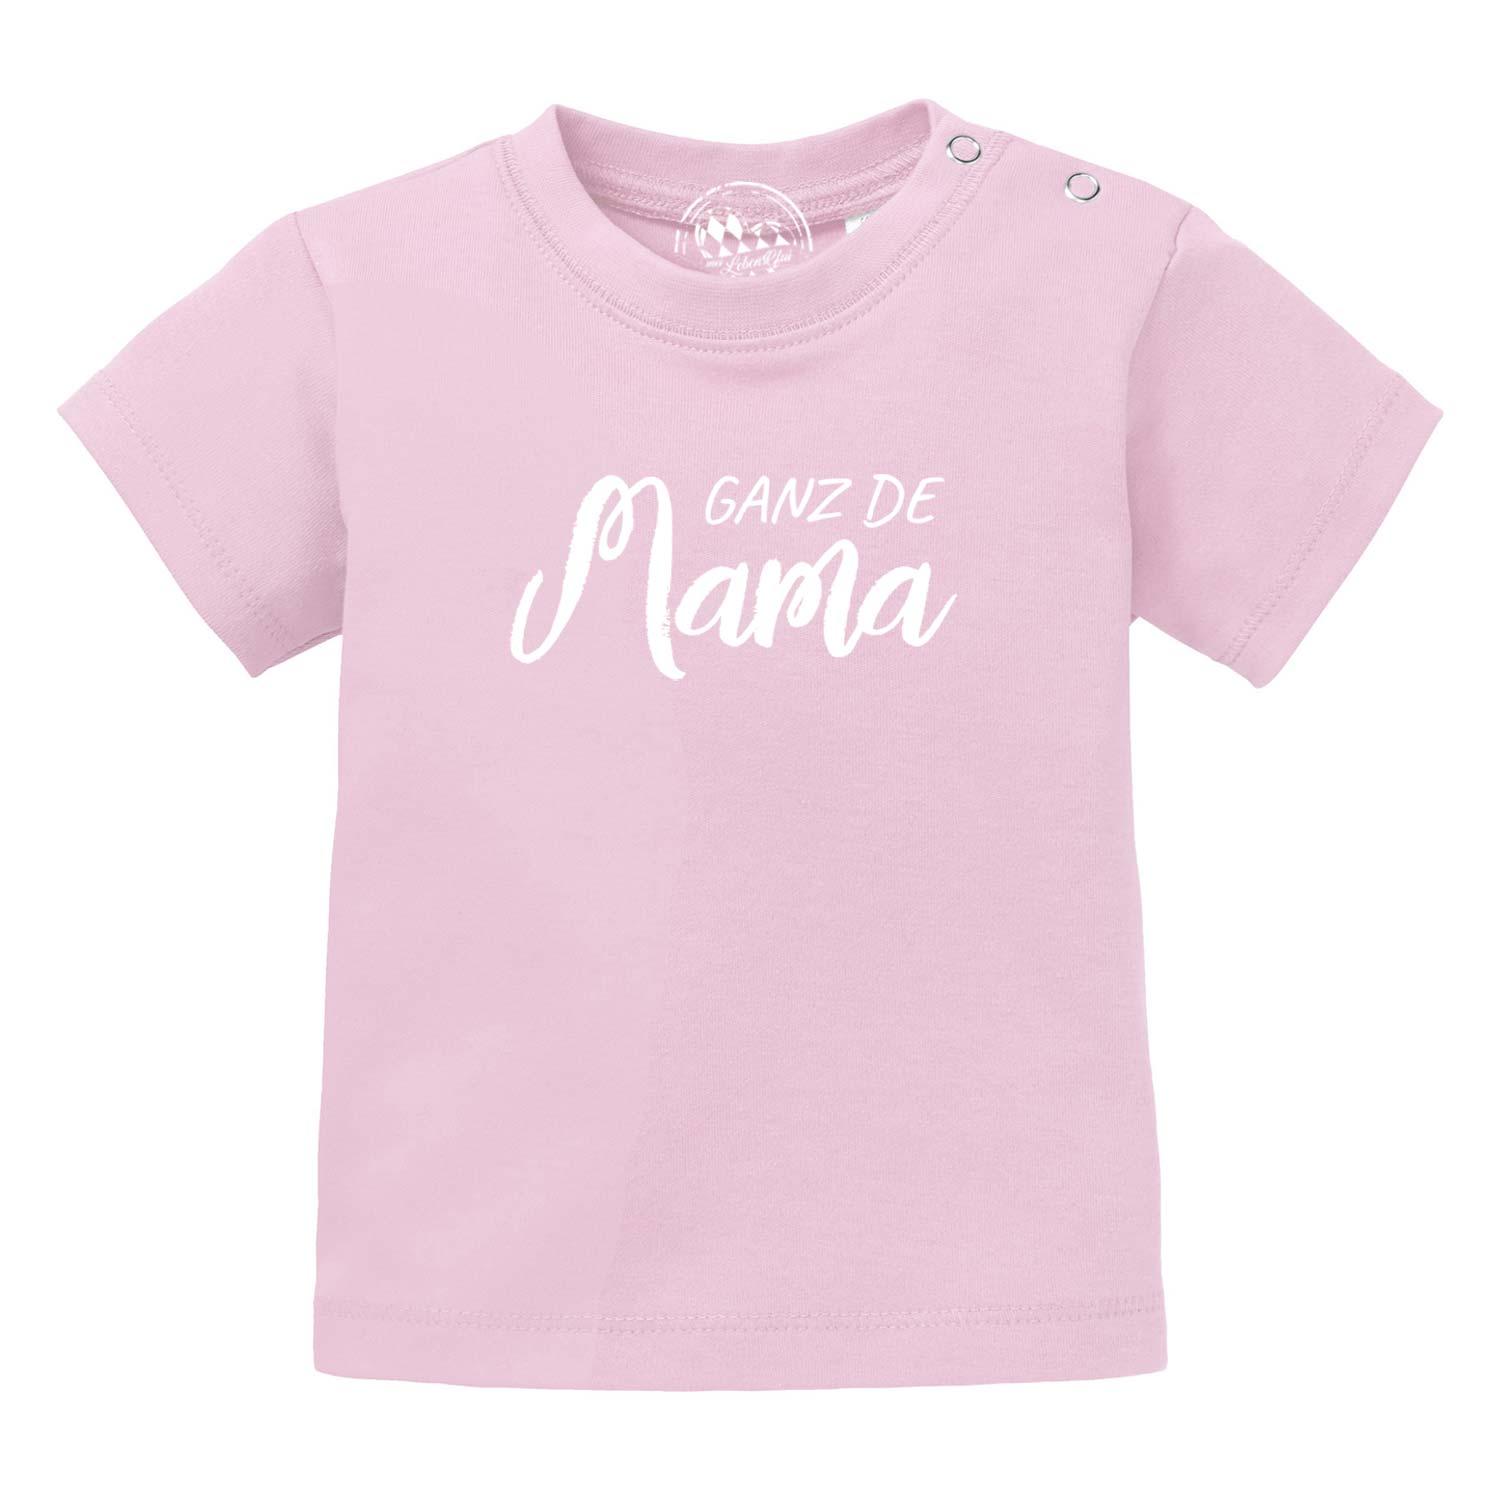 Baby T-Shirt "Ganz de Mama…" - bavariashop - mei LebensGfui